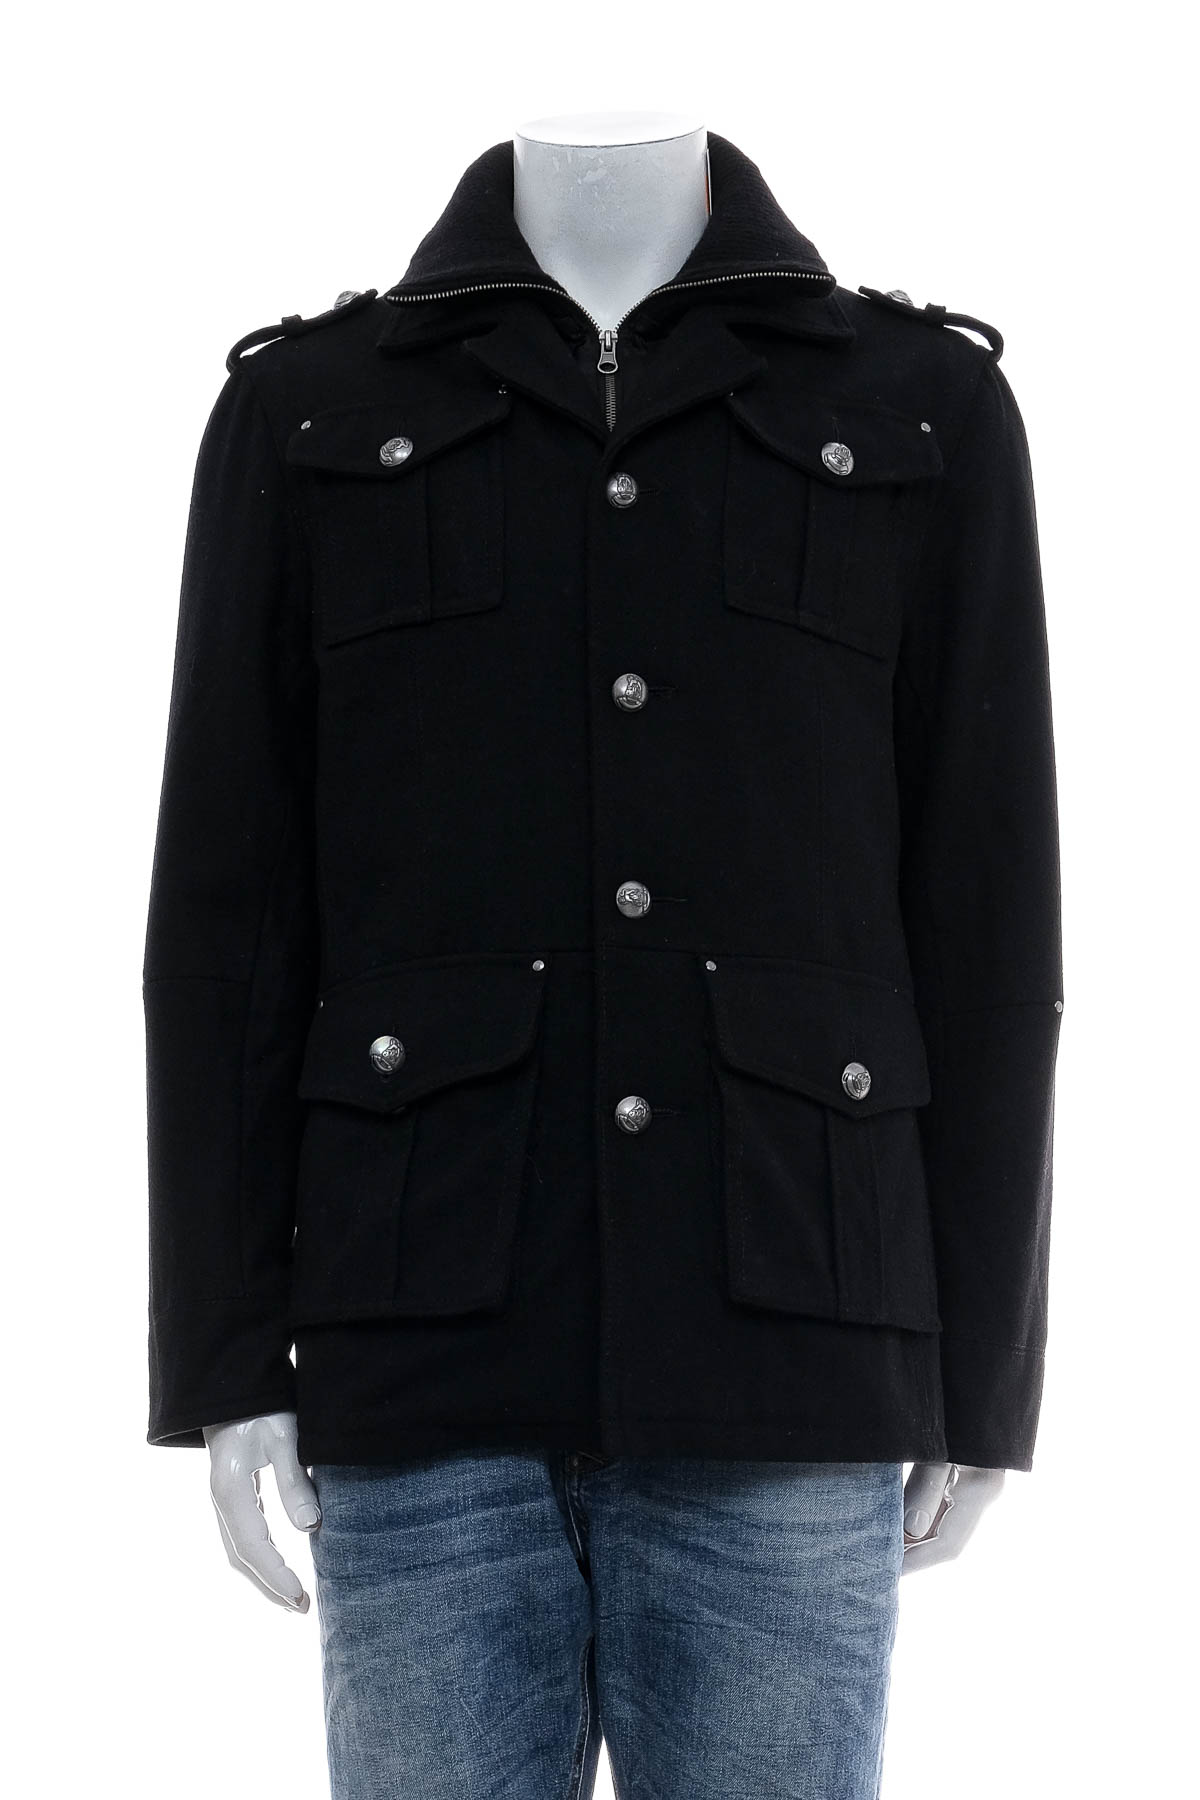 Men's coat - Gipsy - 0